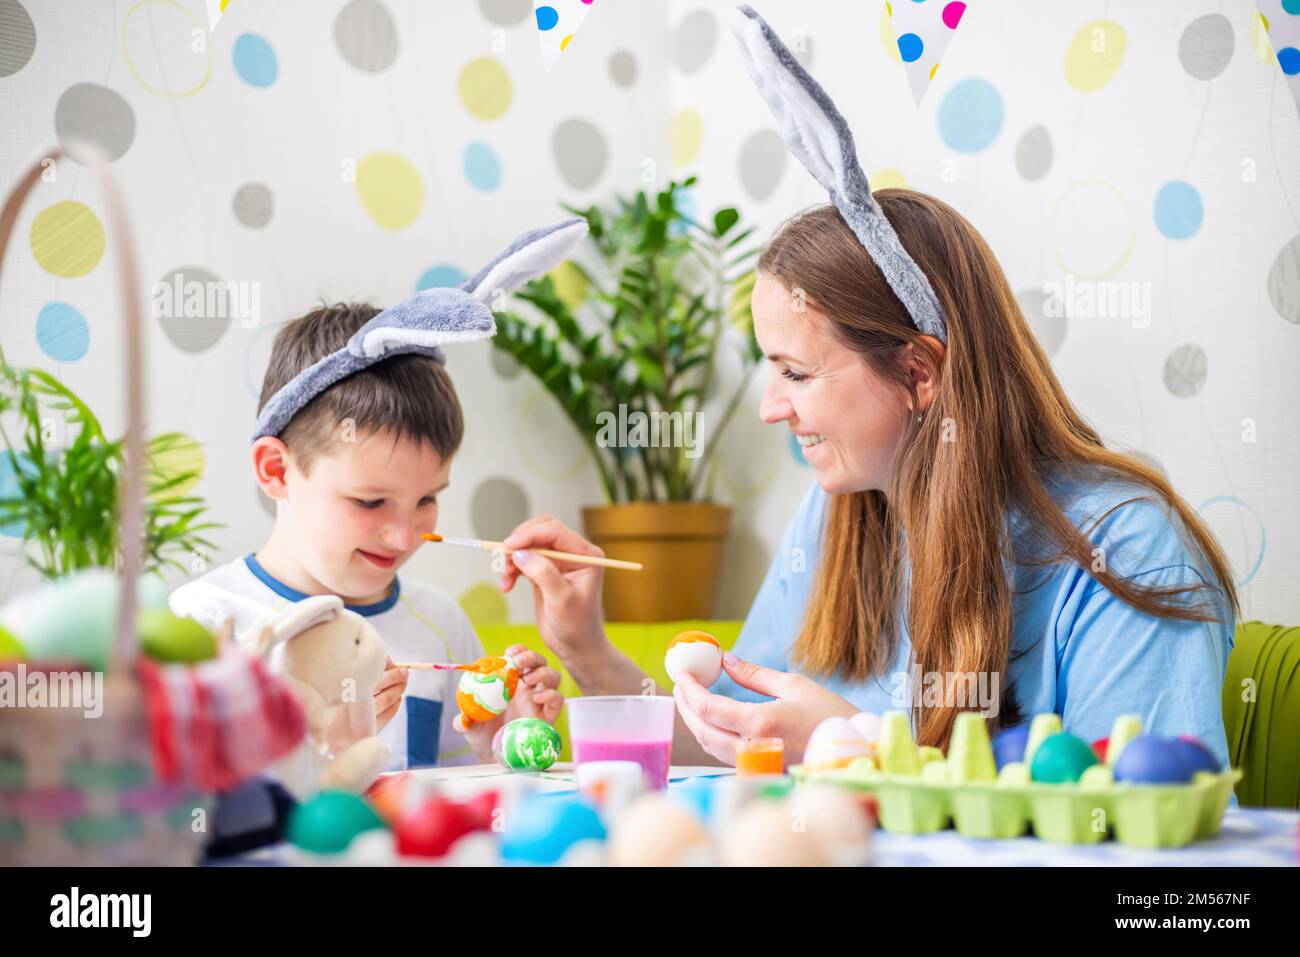 Joyeuses Pâques. Une mère et son fils peignent des œufs de Pâques Banque D'Images